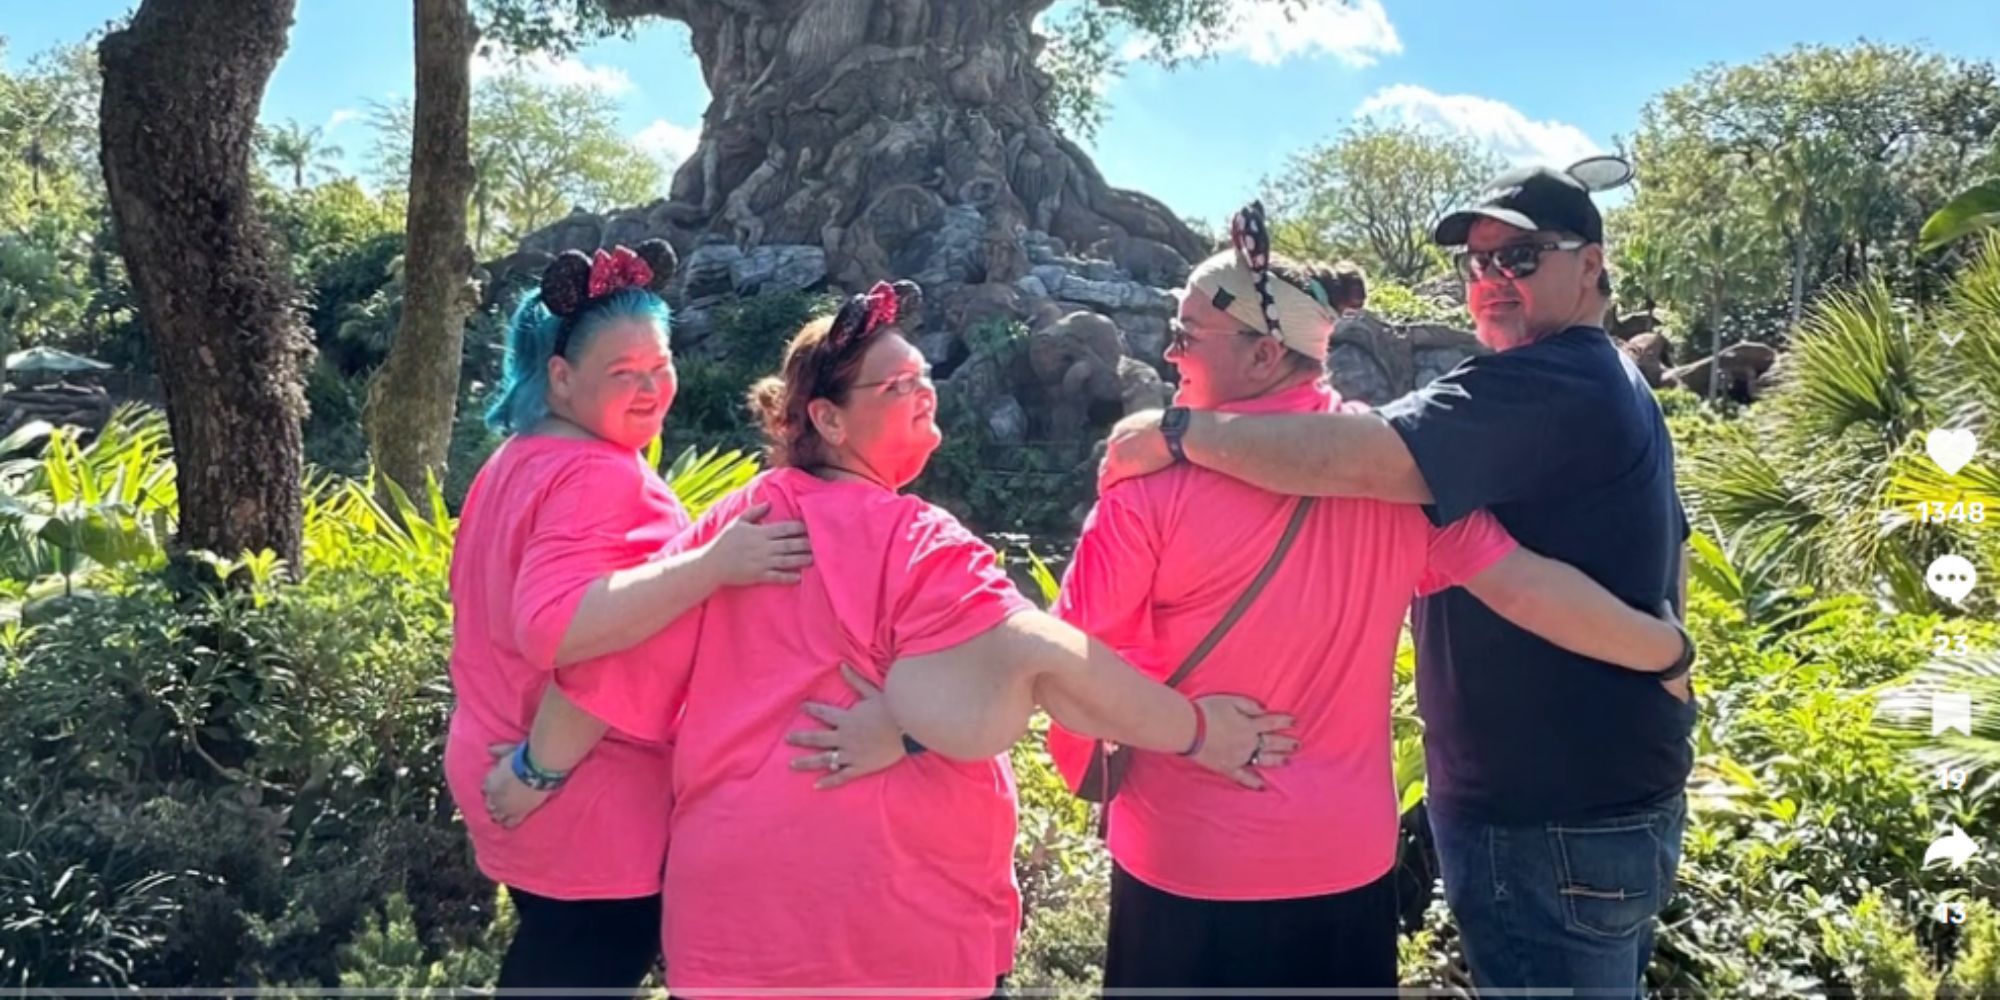 Irmãs de 1.000 libras Amy Slaton, Tammy Slaton, Chris Combs e Brittany Combs no Disney Animal Kingdom Tree Of Life, olhando para a árvore, viradas ligeiramente de volta para a câmera